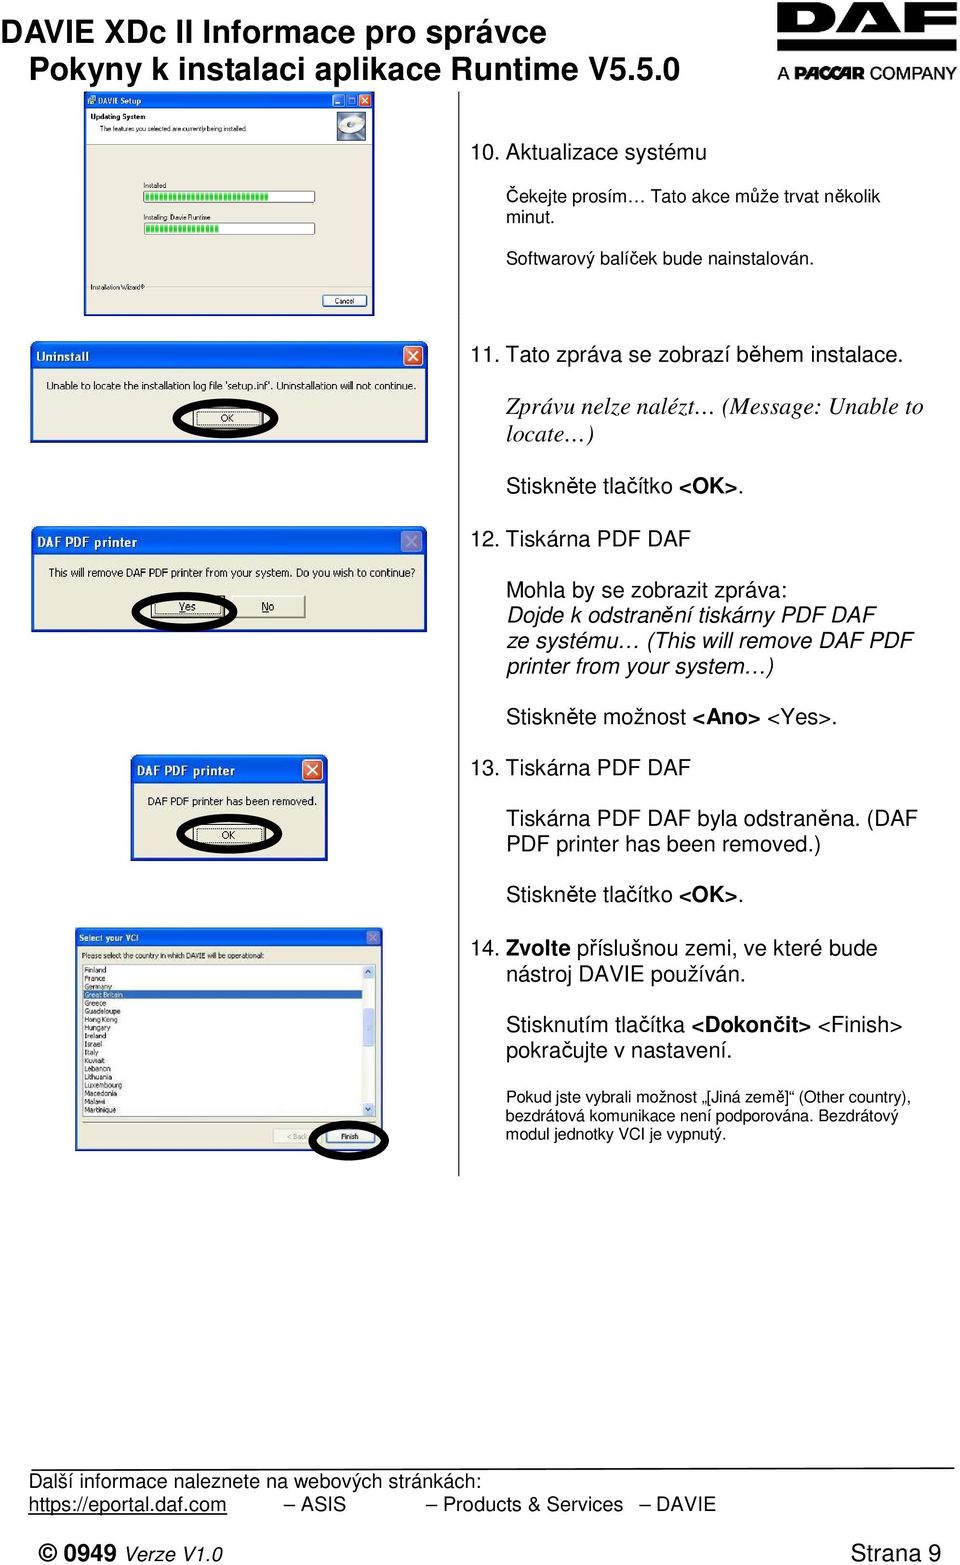 Tiskárna PDF DAF Mohla by se zobrazit zpráva: Dojde k odstranění tiskárny PDF DAF ze systému (This will remove DAF PDF printer from your system ) Stiskněte možnost <Ano> <Yes>. 13.